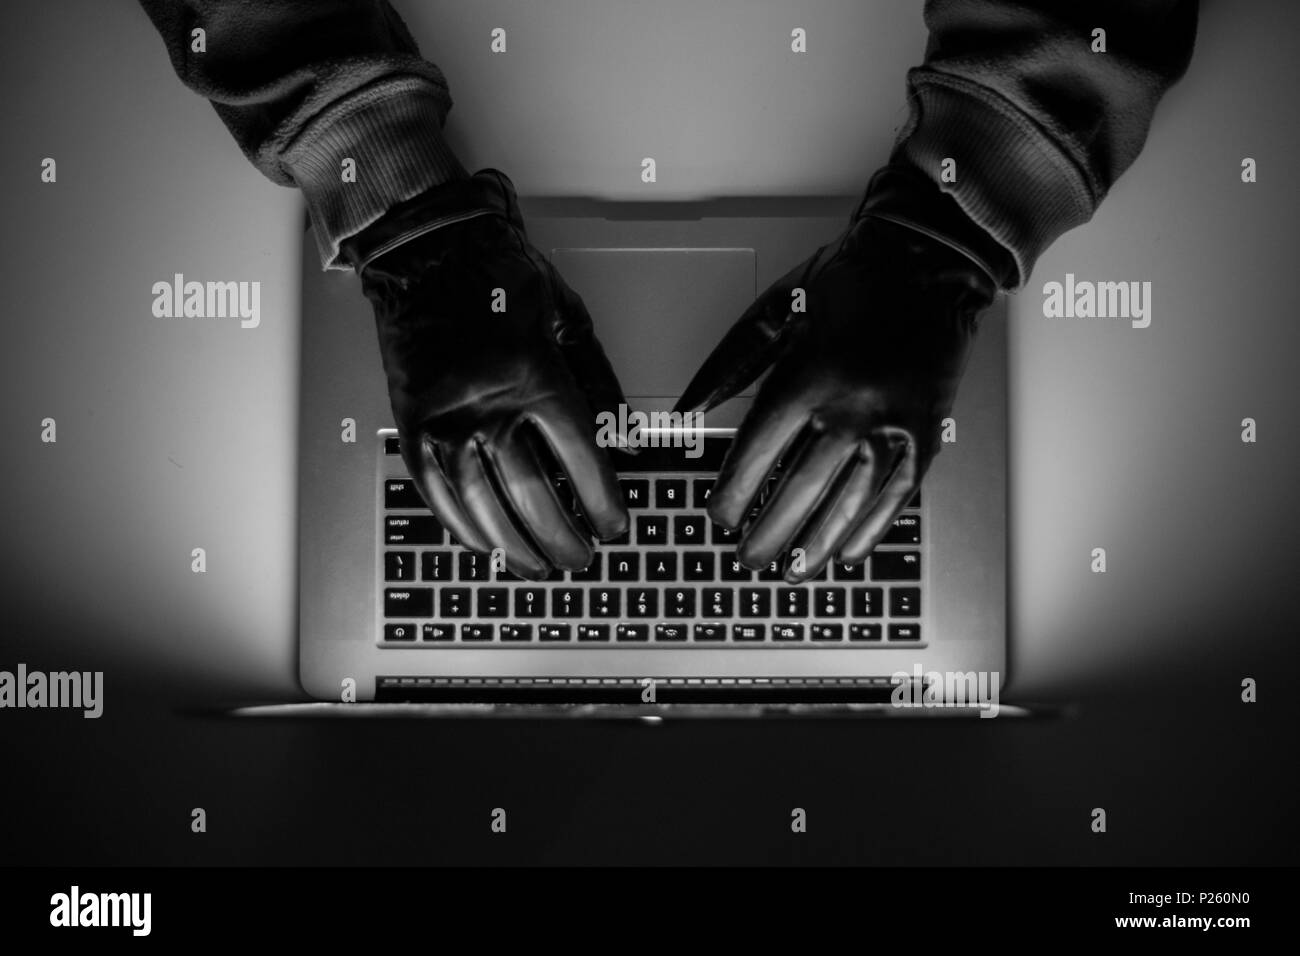 Cyberkriminalität, einem Laptop Hacker, schreibt Codes unerlaubte Sachen zu Zugang, einen illegalen Weg, Hacker, Kriminalität, cyber Stockfoto